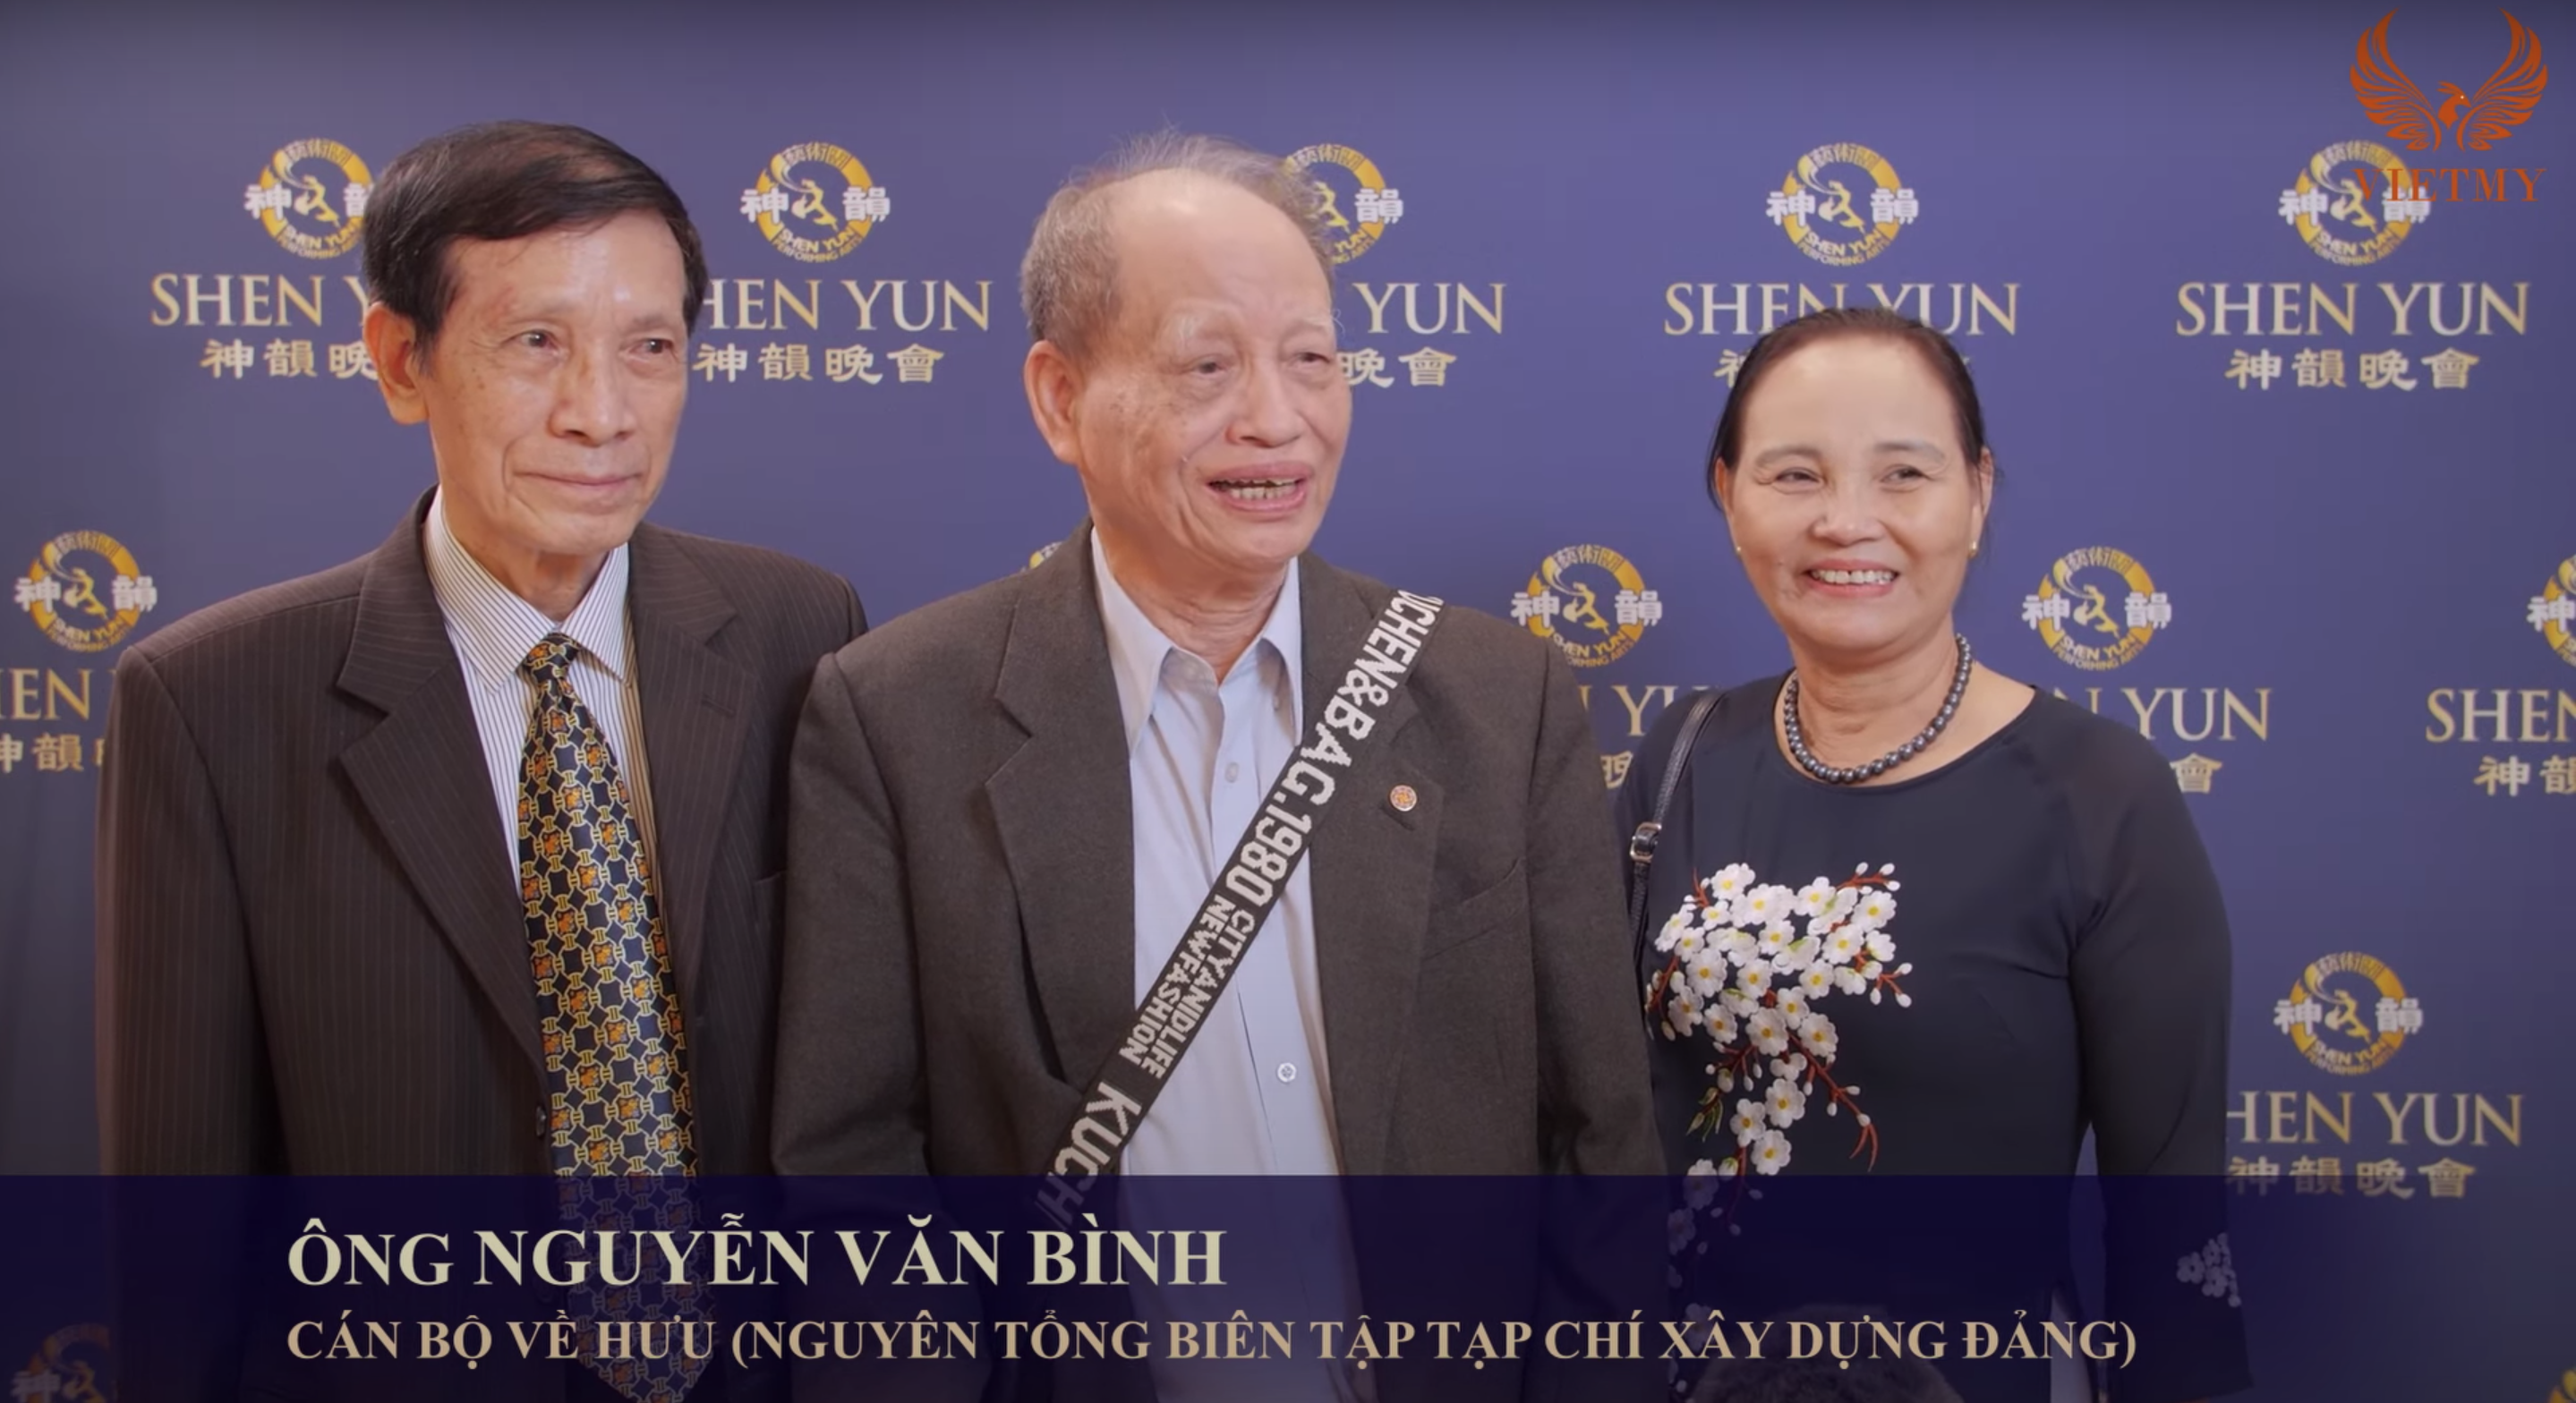 Thưởng thức Nghệ thuật biểu diễn Shen Yun: Những giờ phút ý nghĩa nhất dành cho gia đình